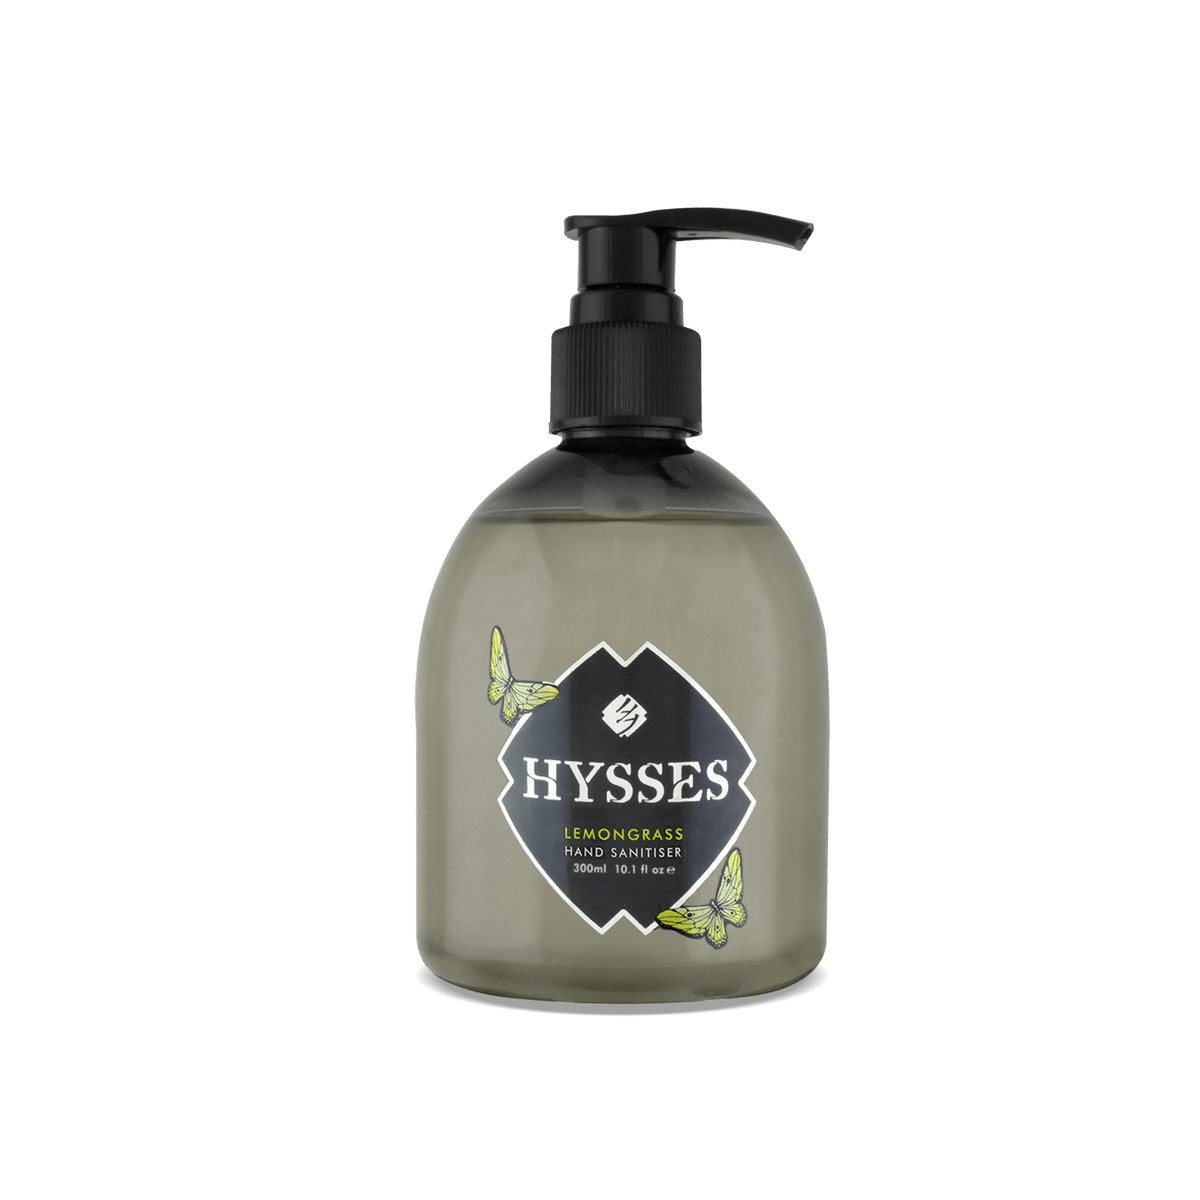 Hysses Body Care 300ml Hand Sanitiser Lemongrass